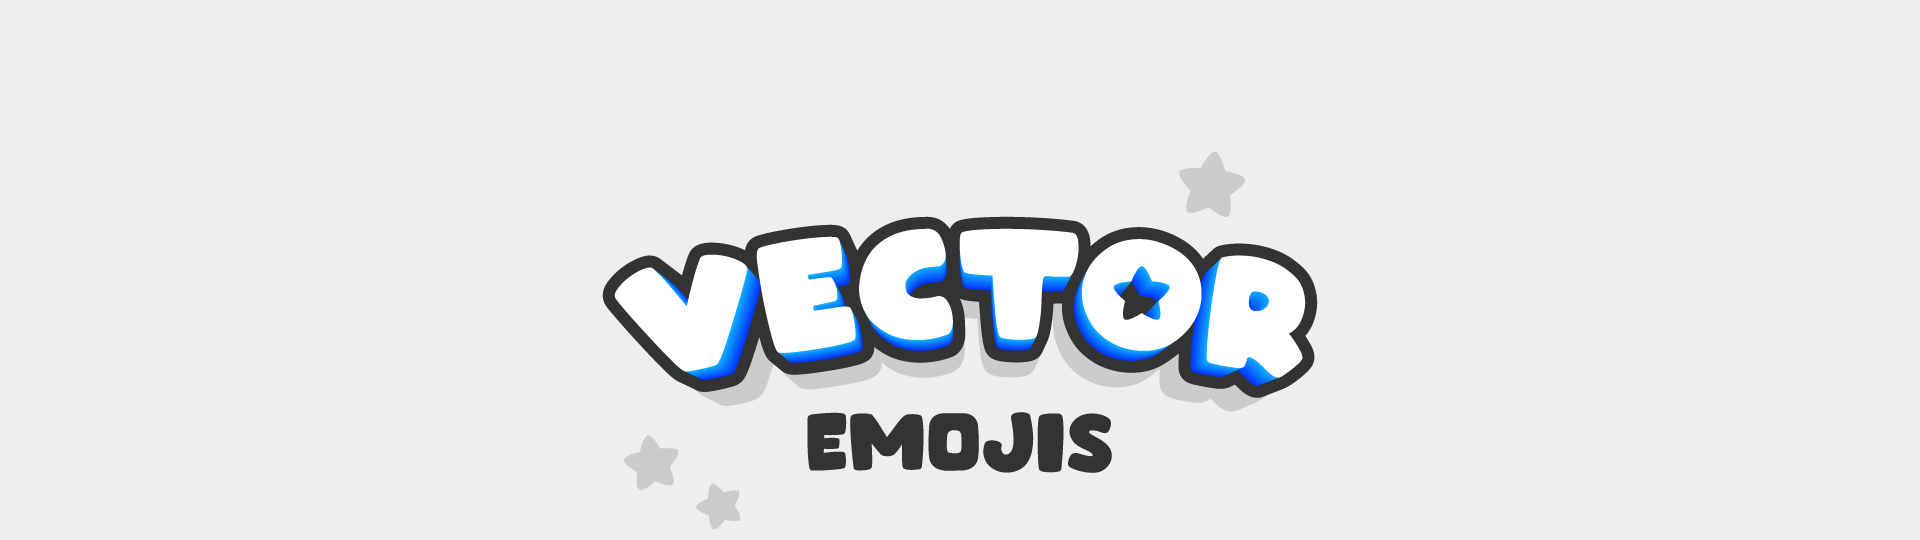 Vector Emoji Icons